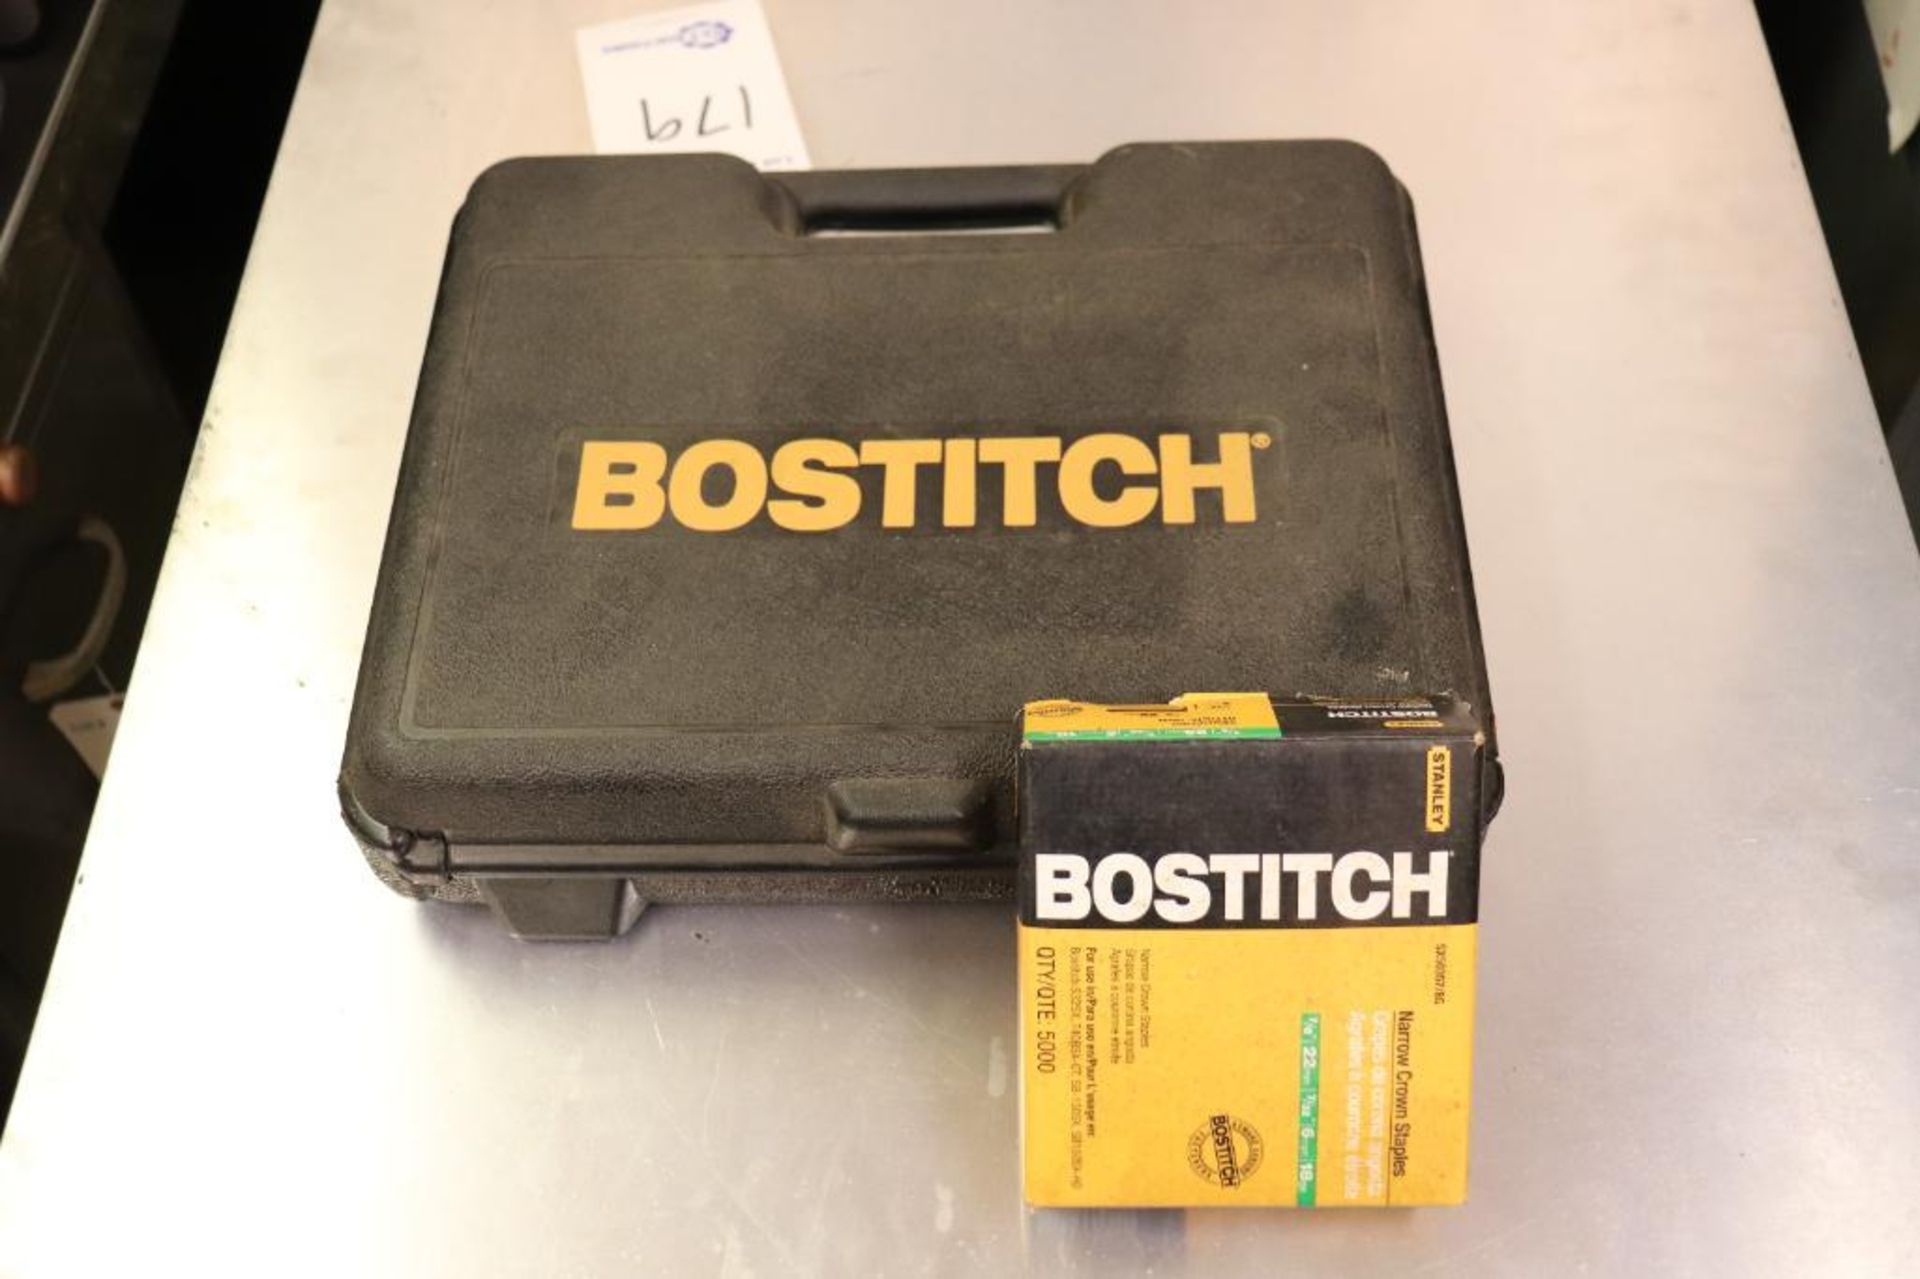 Bostitch SX150 stapler & stud finder